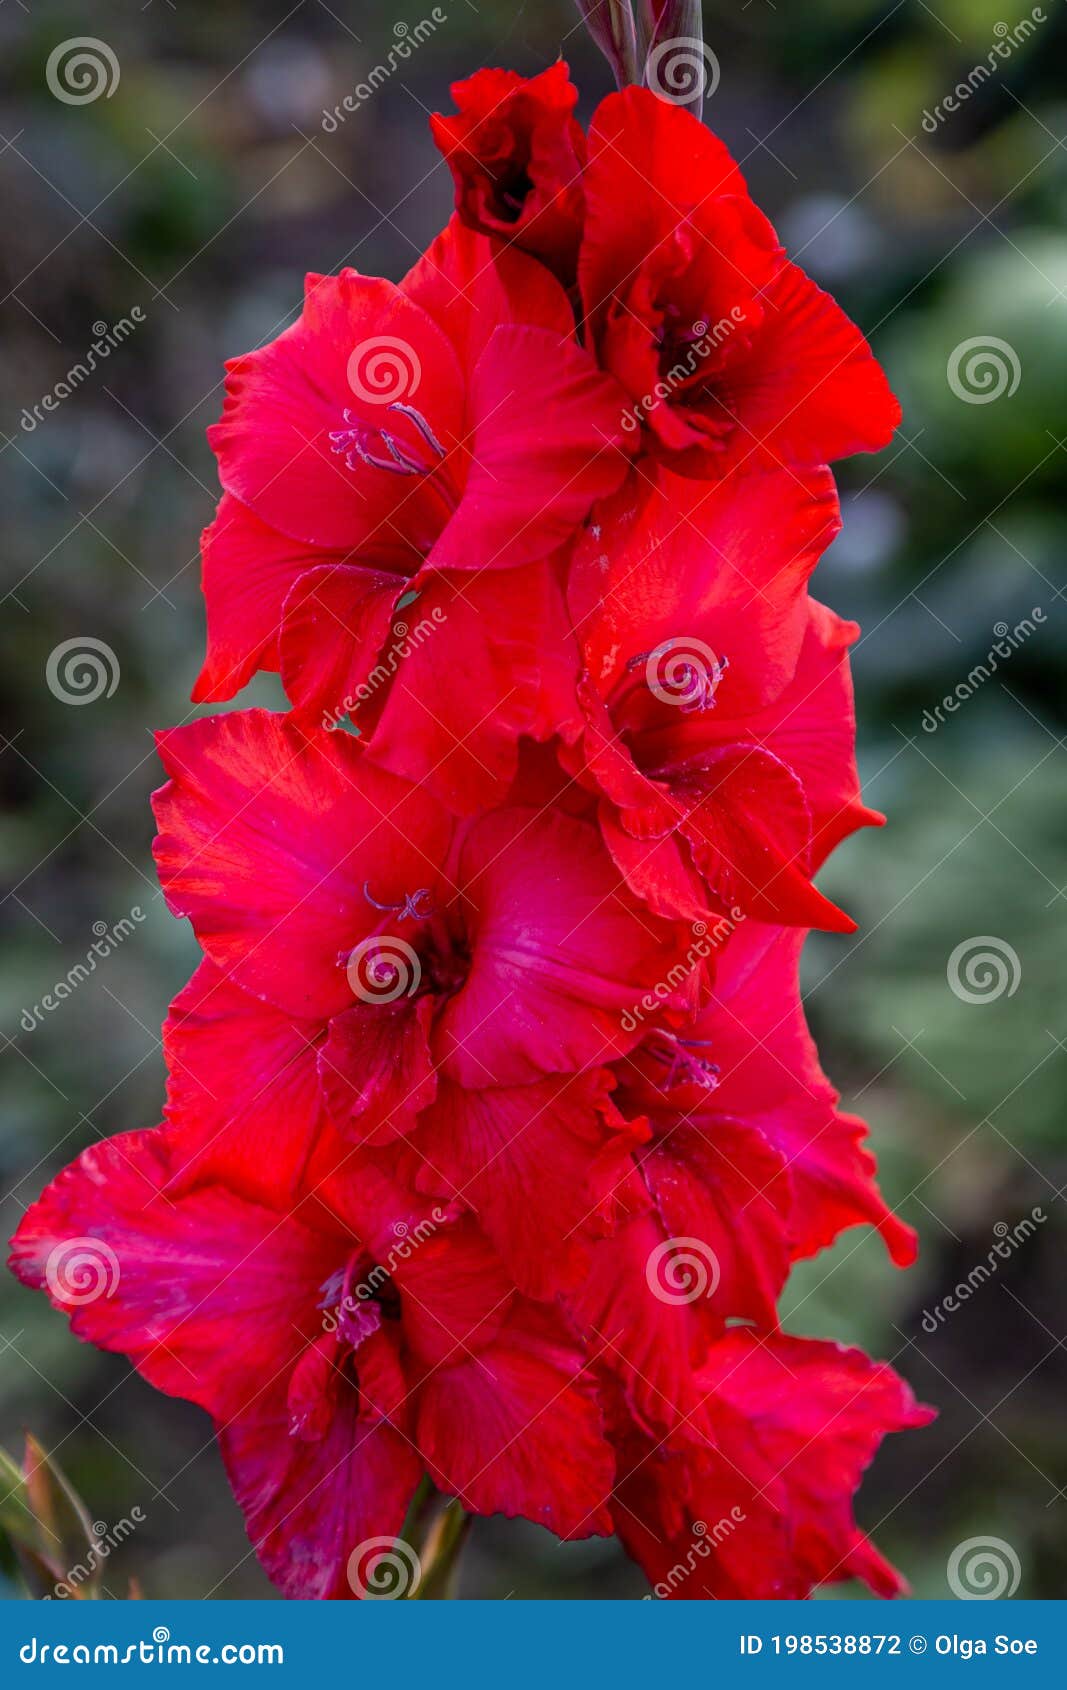 red flower gladiolos closeup in garden